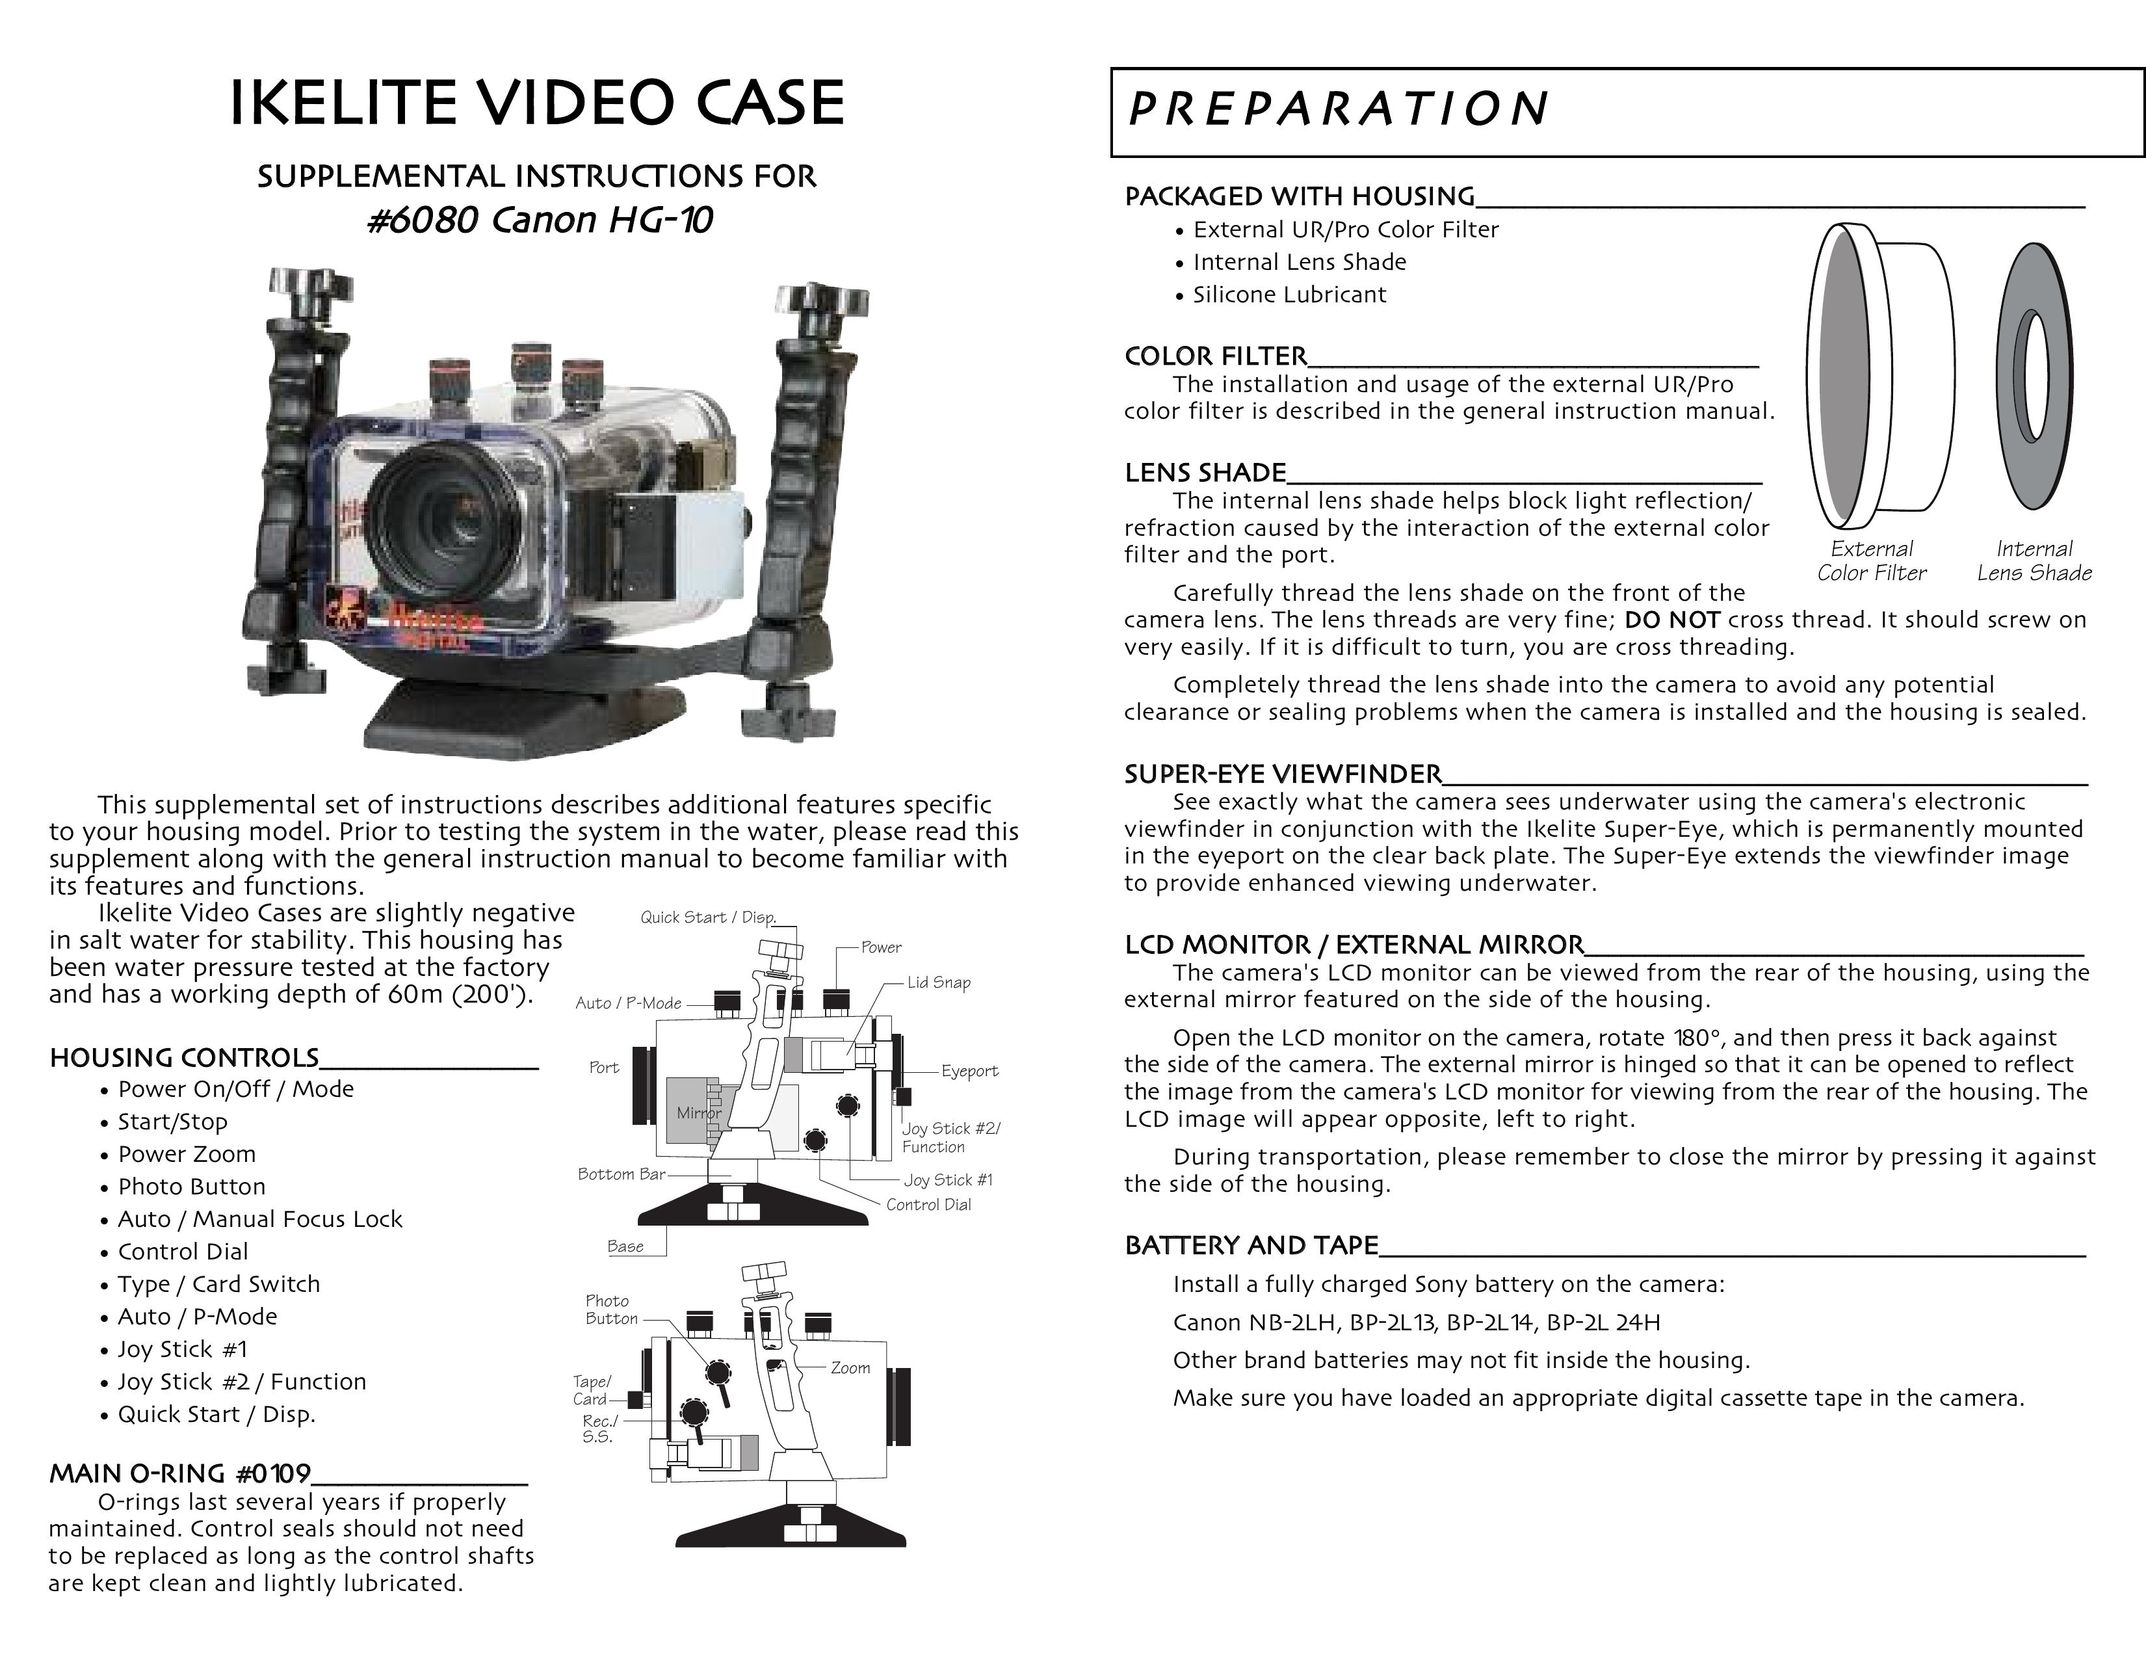 Ikelite HG-10 Carrying Case User Manual